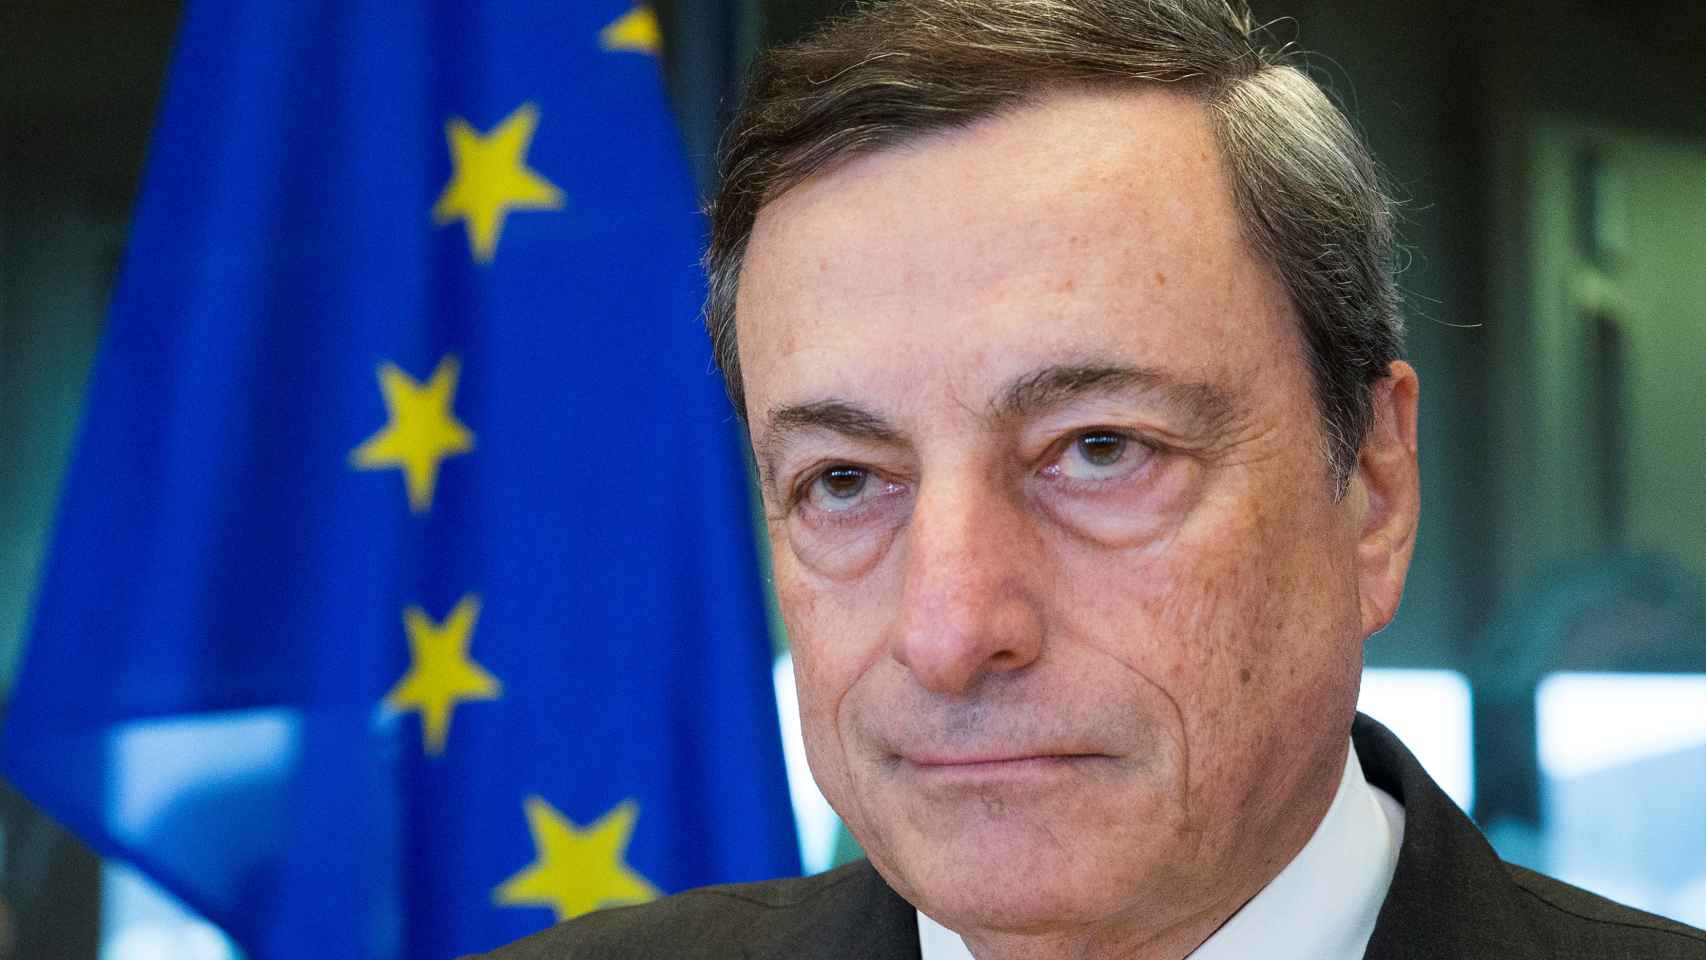 Draghi pide acelerar la separación con Londres para acabar con la incertidumbre